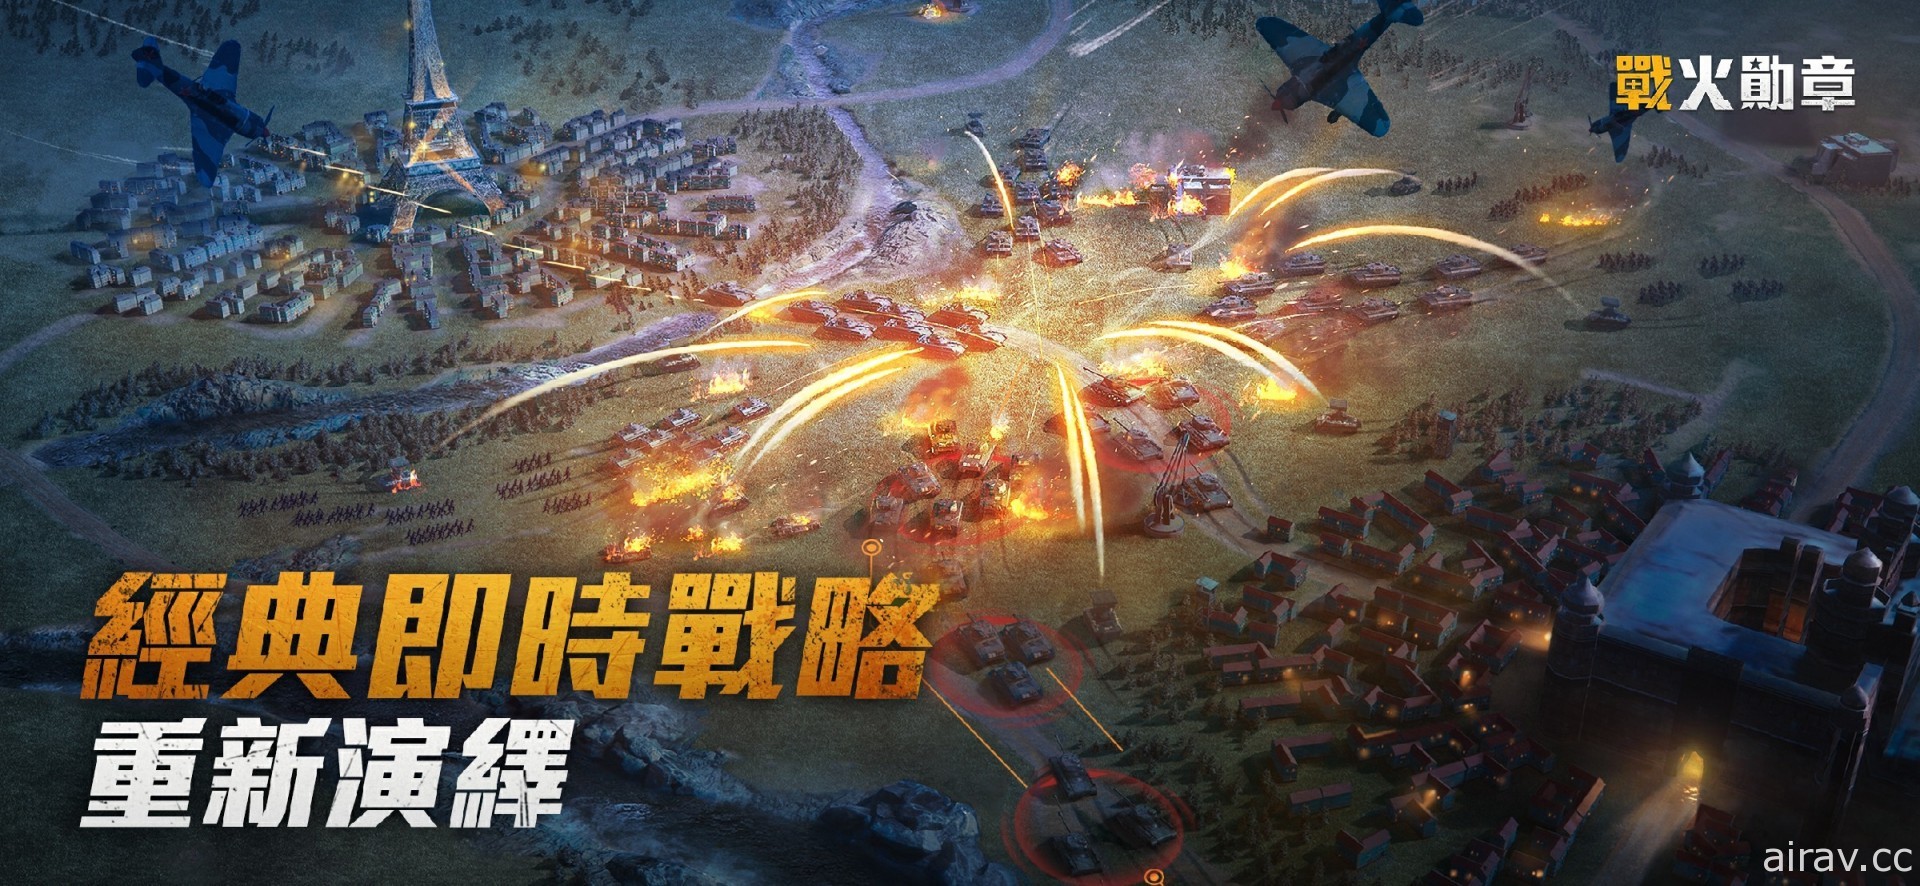 战争策略游戏《战火勋章》事前预约开跑 登录送台湾限定头像